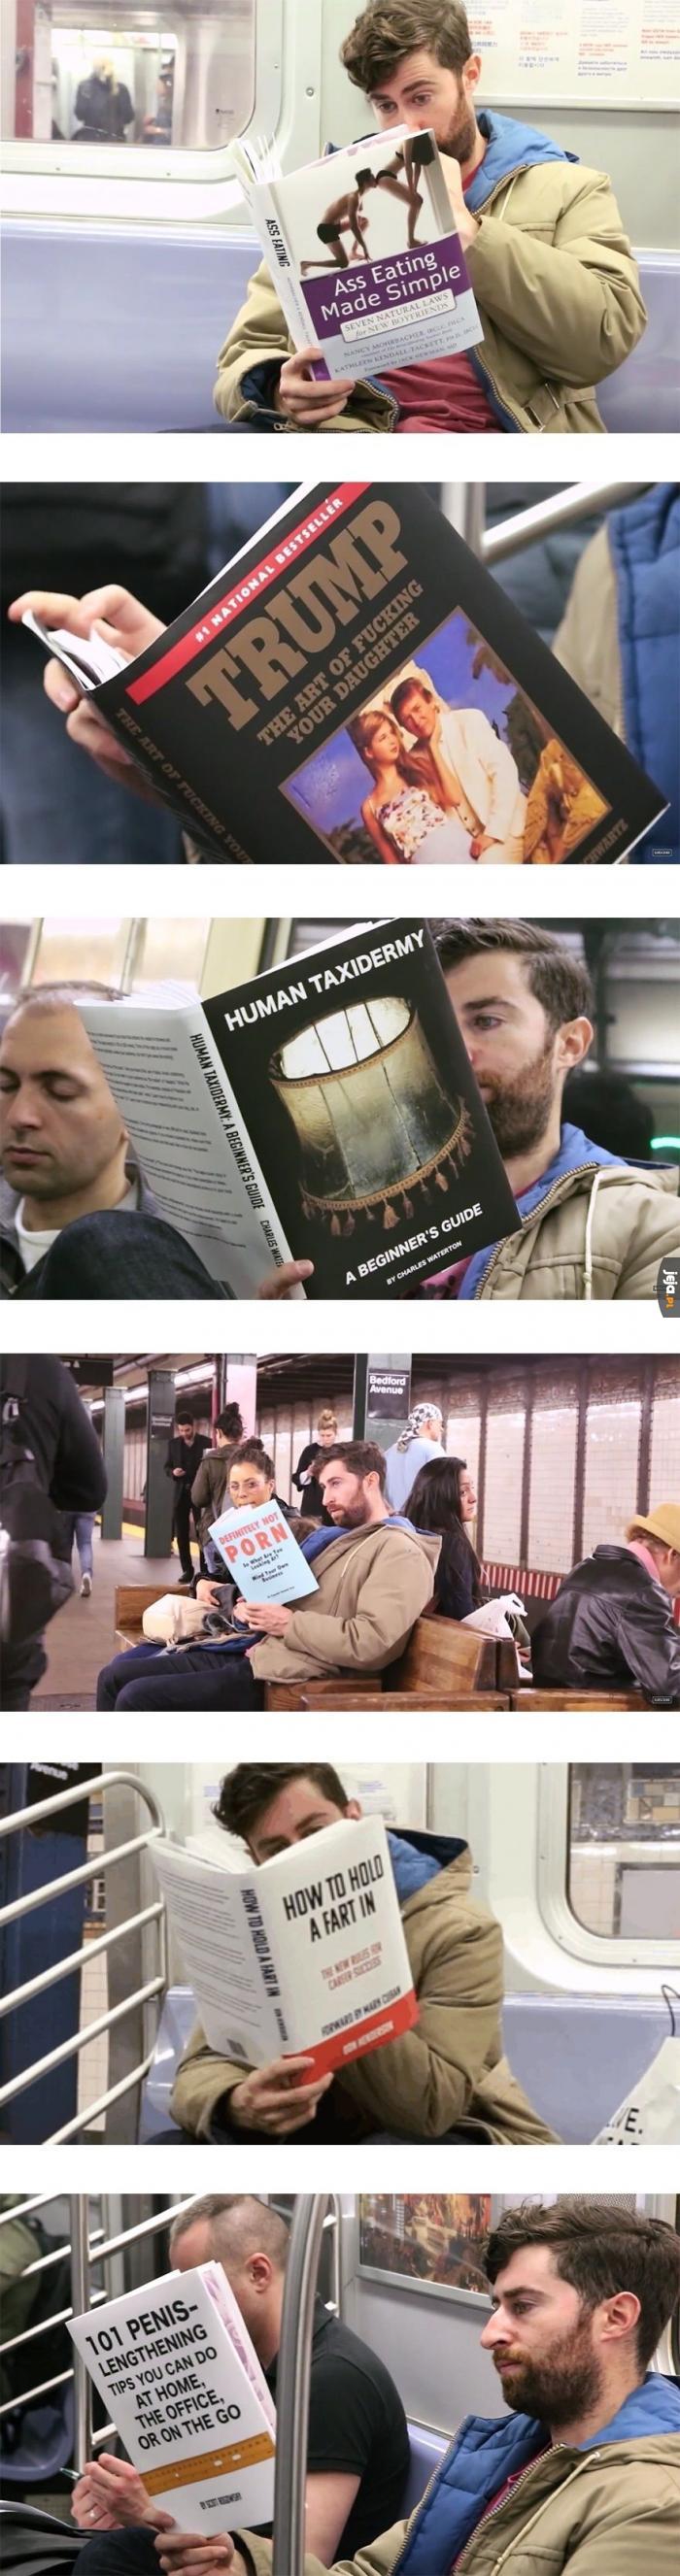 Fakeowe okładki książek w komunikacji miejskiej